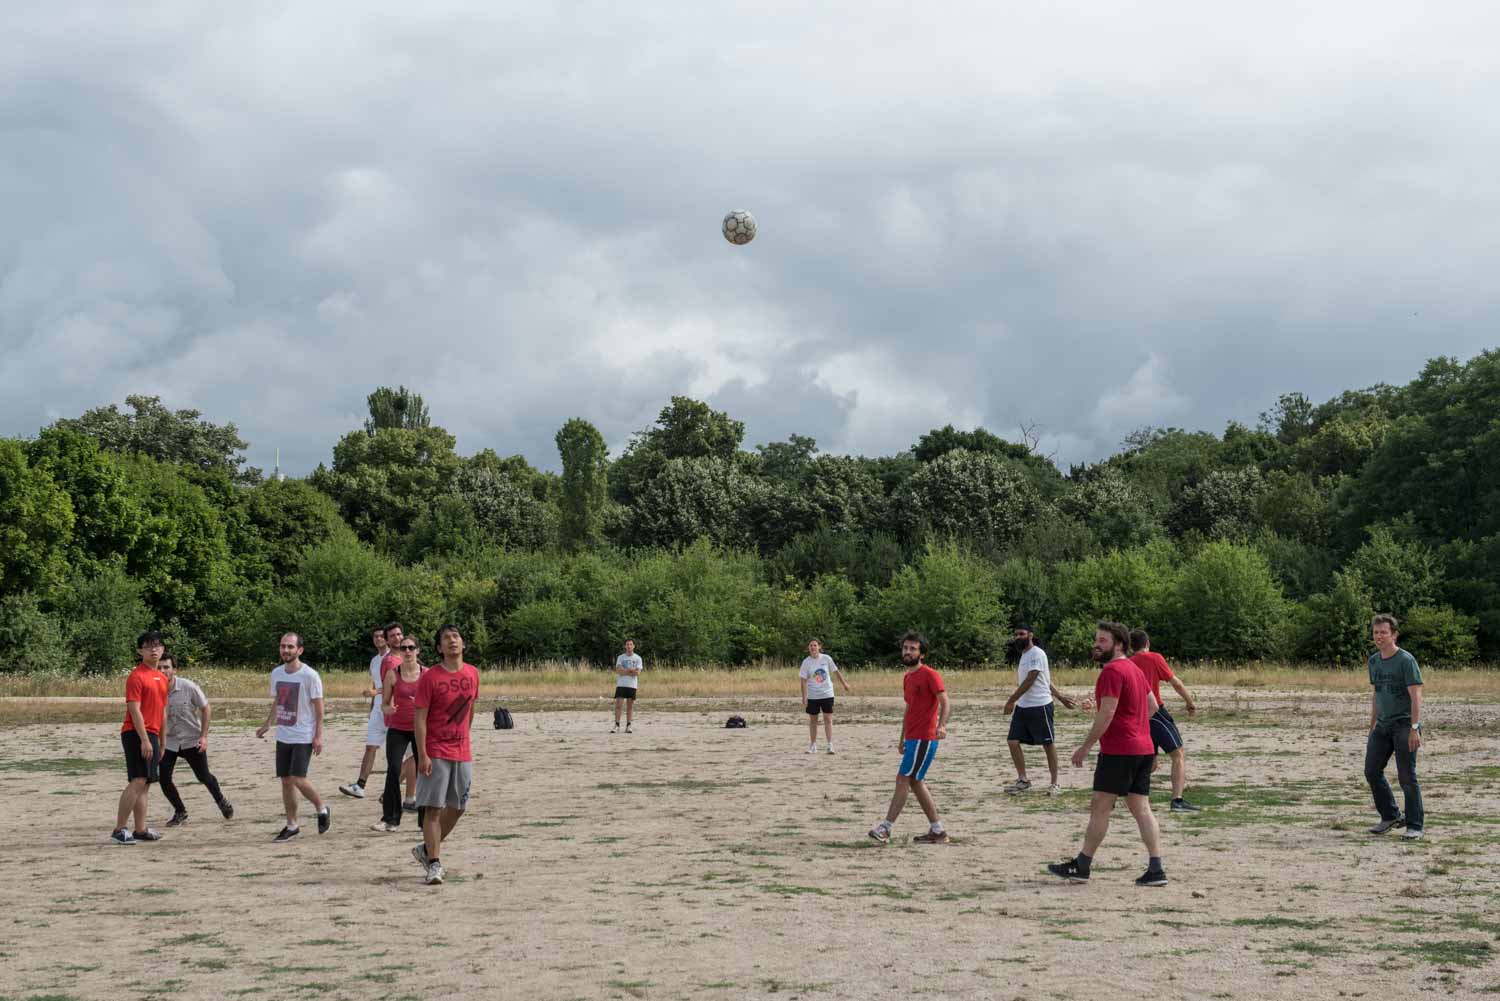 LPA. Laboratoire Pierre Aigrin . En ce début d'été 2017, Un tournoi de football réunit au bois de Vincennes les étudiants et les chercheurs du LPA. A défaut d'avoir réussi à trouver le terrain de football initialement prévu, l'équipe se retrouve à jouer sur un terrain vague, et finit très vite par s'adapter.